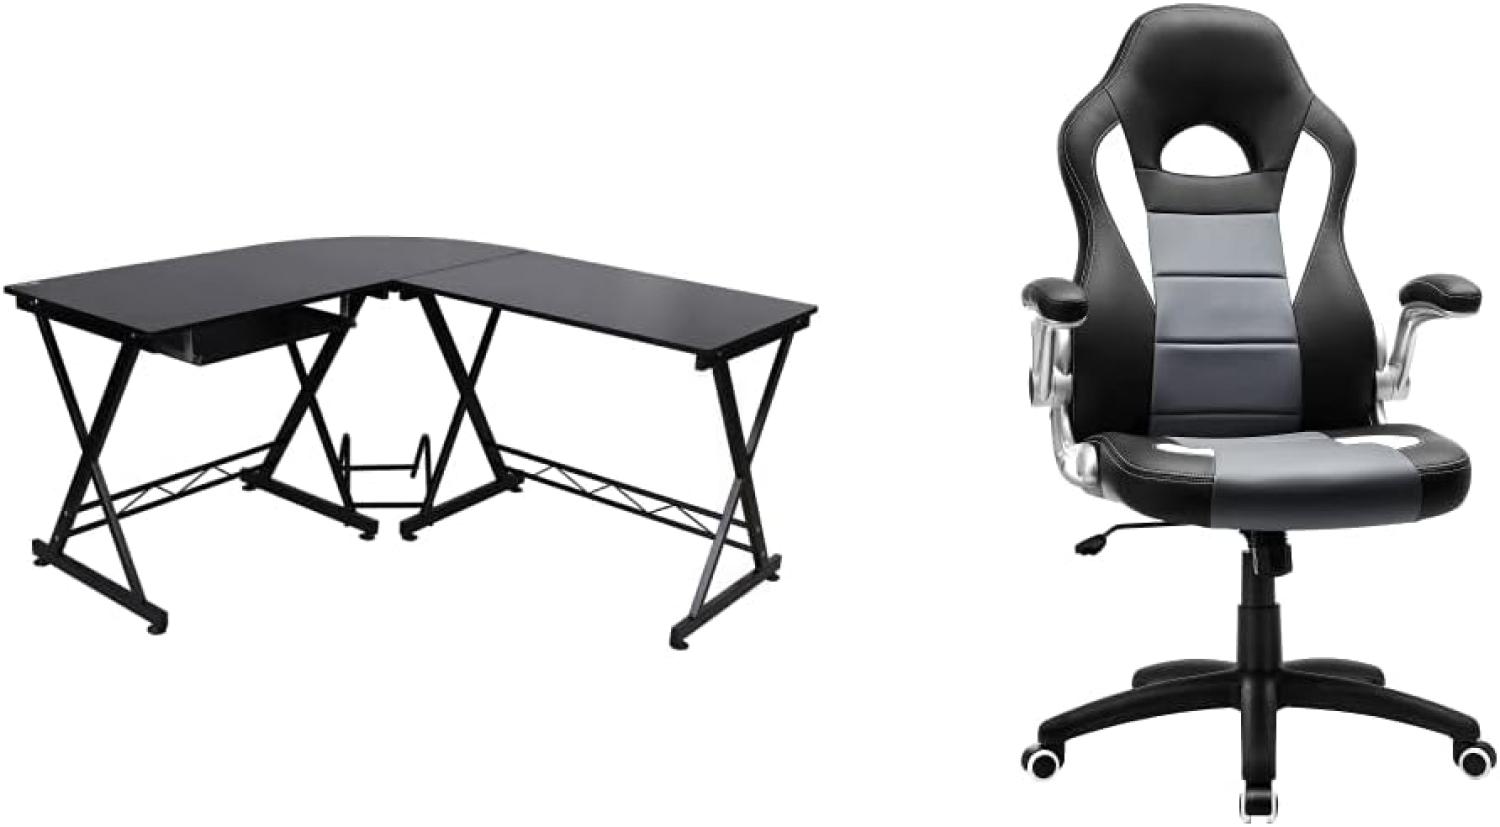 SONGMICS Computertisch, Schreibtisch, für das Home Office, 150 x 138 x 75 cm, schwarz LCD402B & Gamingstuhl, Racing Chair, Schreibtischstuhl mit hoher Rückenlehne, schwarz-grau-weiß OBG28G Bild 1